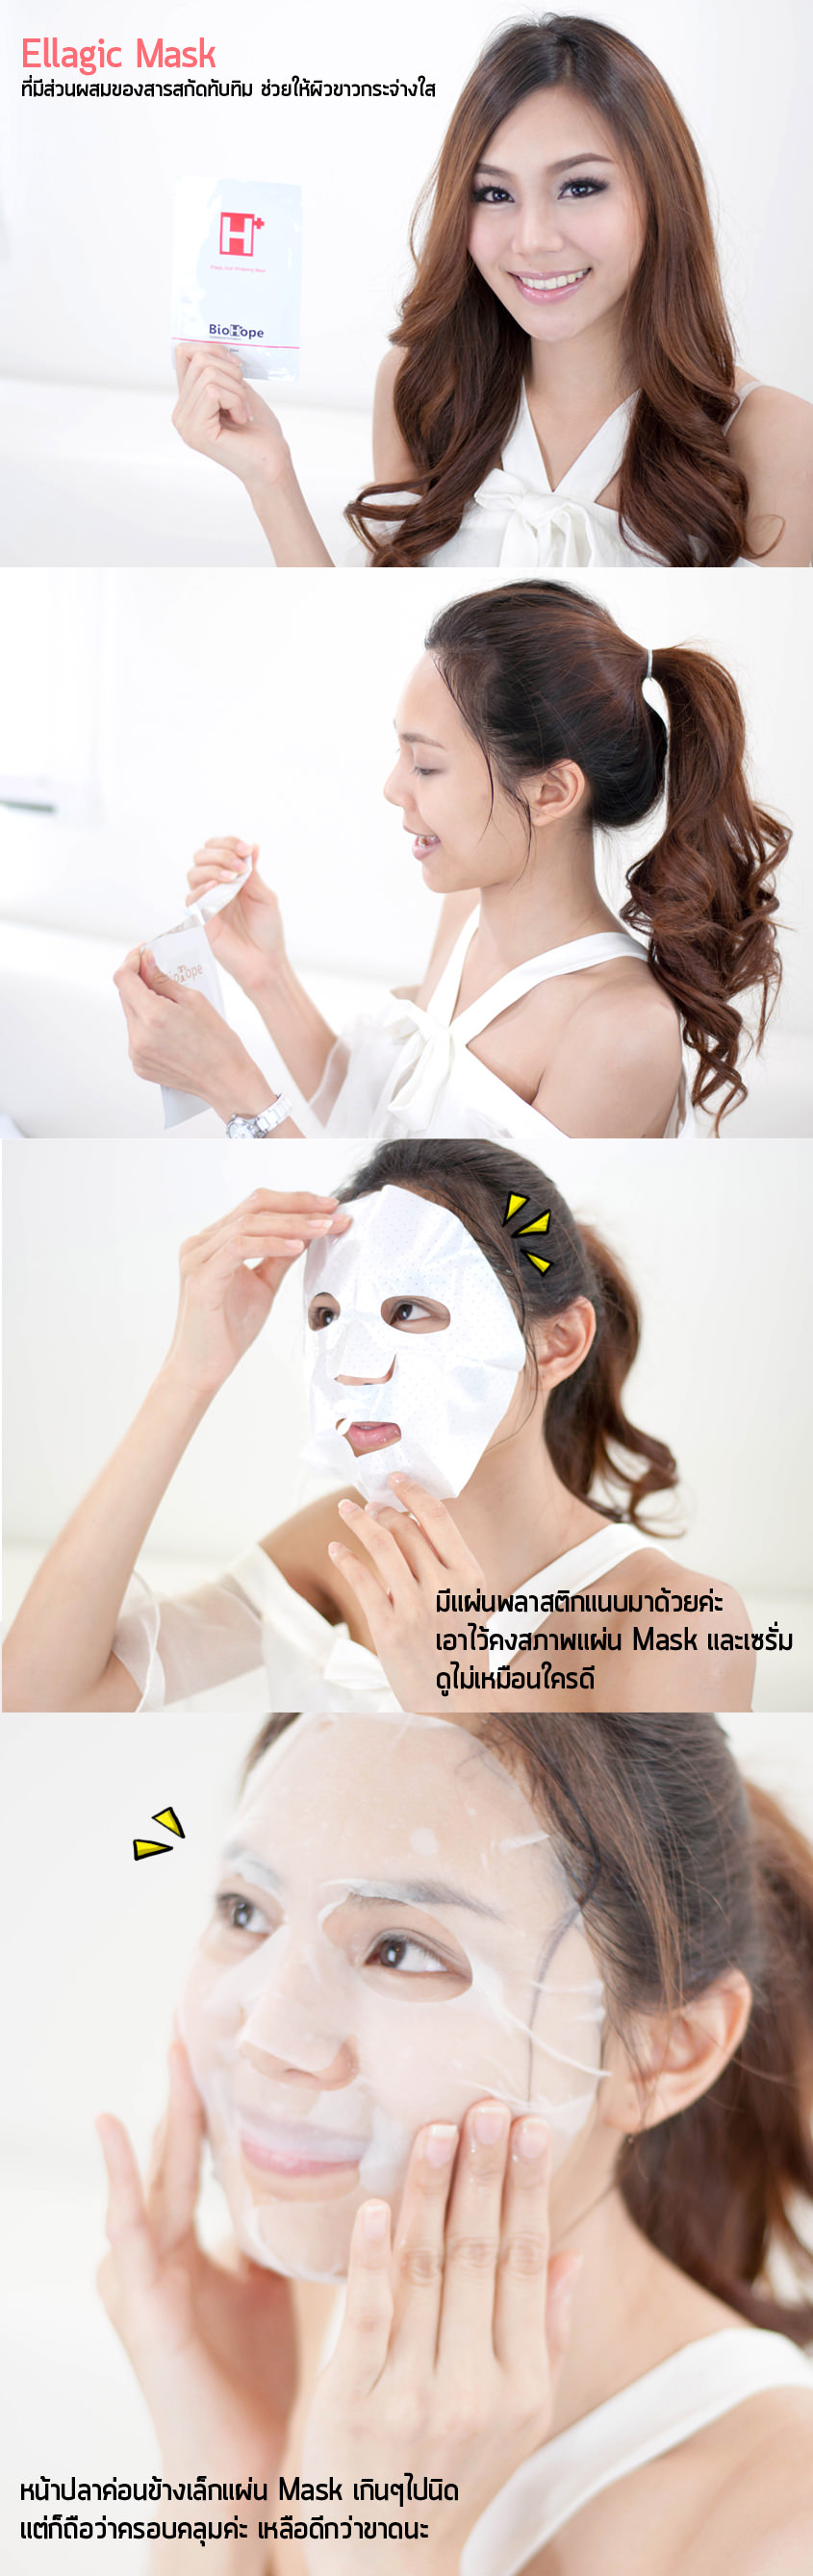 วิธีการใช้ Ellagic Acid Whitening Mask มาร์คหน้าใส ผิวขาวขึ้นจนสัมผัสได้